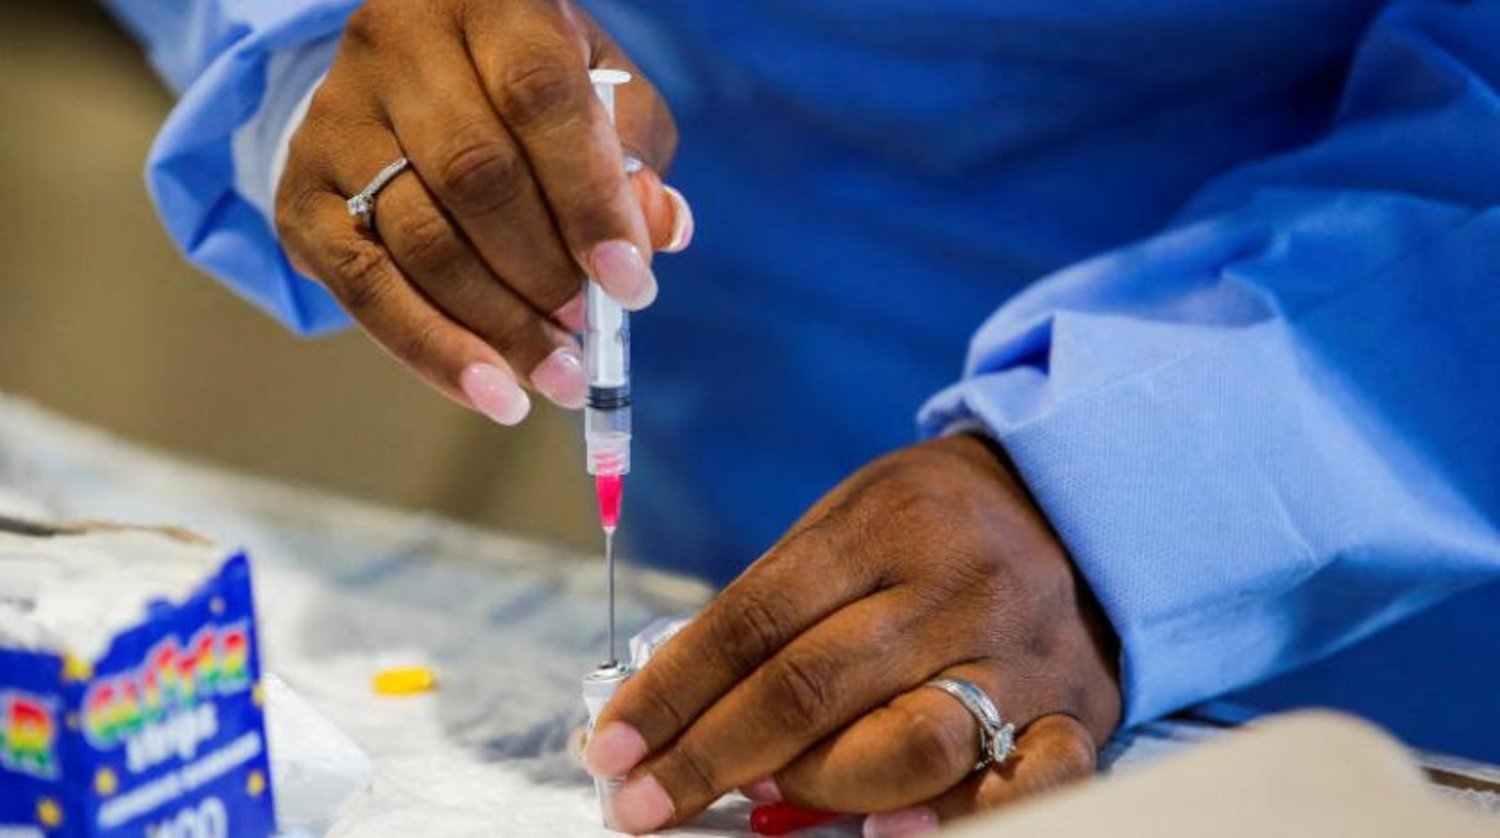 Westchester Tıp Merkezinde çalışan bir kişi, New York'taki maymun çiçeği aşı merkezinde aşı hazırlarken (Reuters)